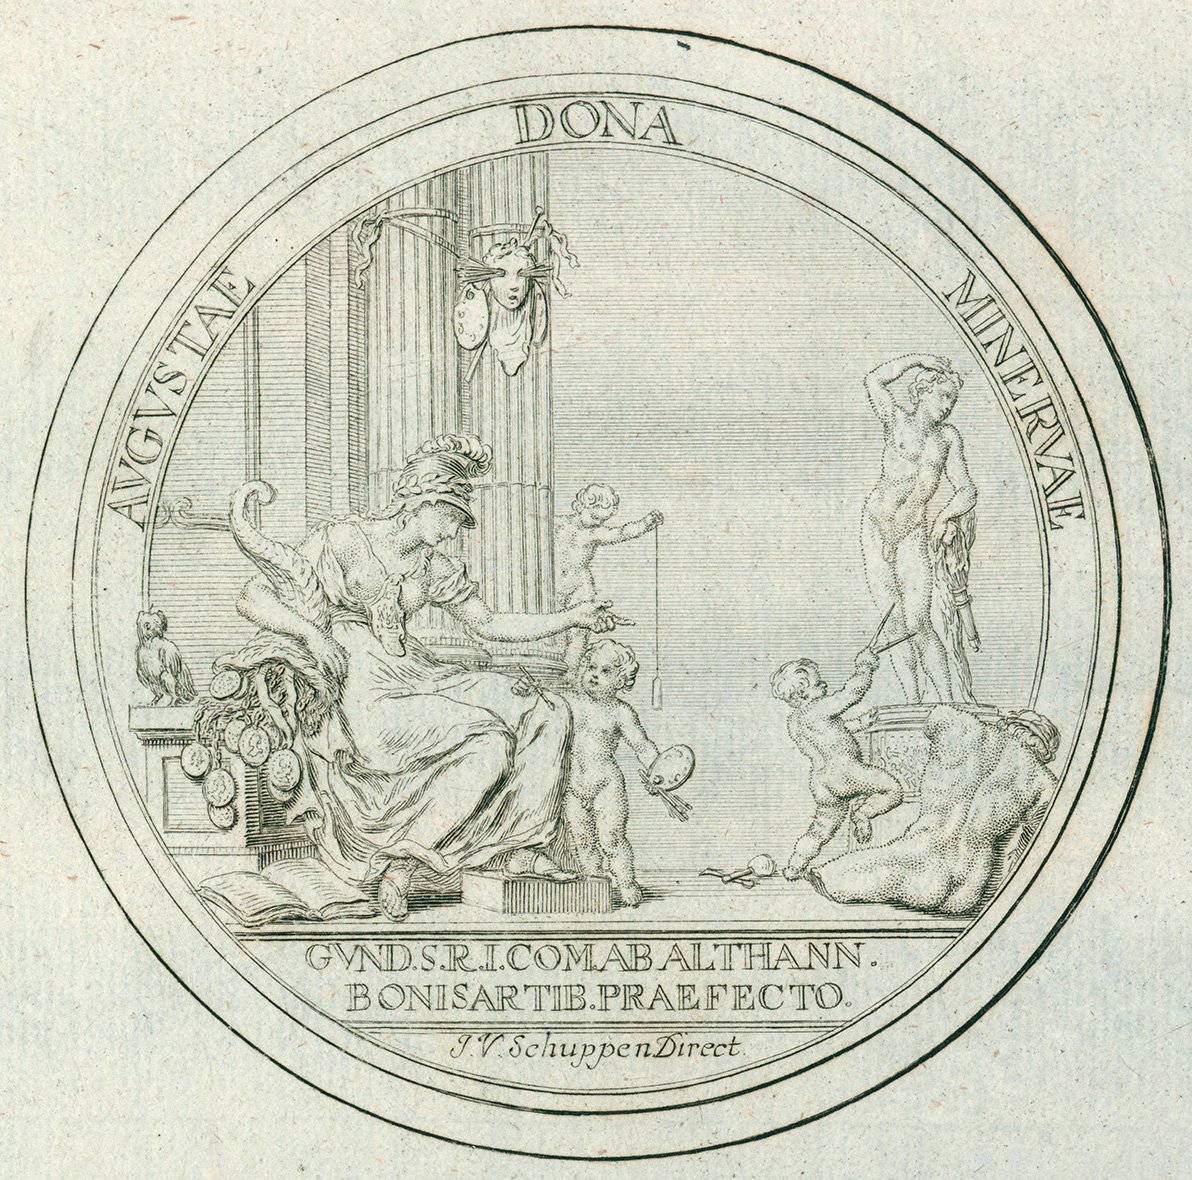 Feine Tuschezeichnung einer kreisrunden Medaille mit Darstellung der Göttin Minerva und allegorischen Figuren der Künste und lateinischer Beschriftung, schwarze Tusche auf weißem Papier.